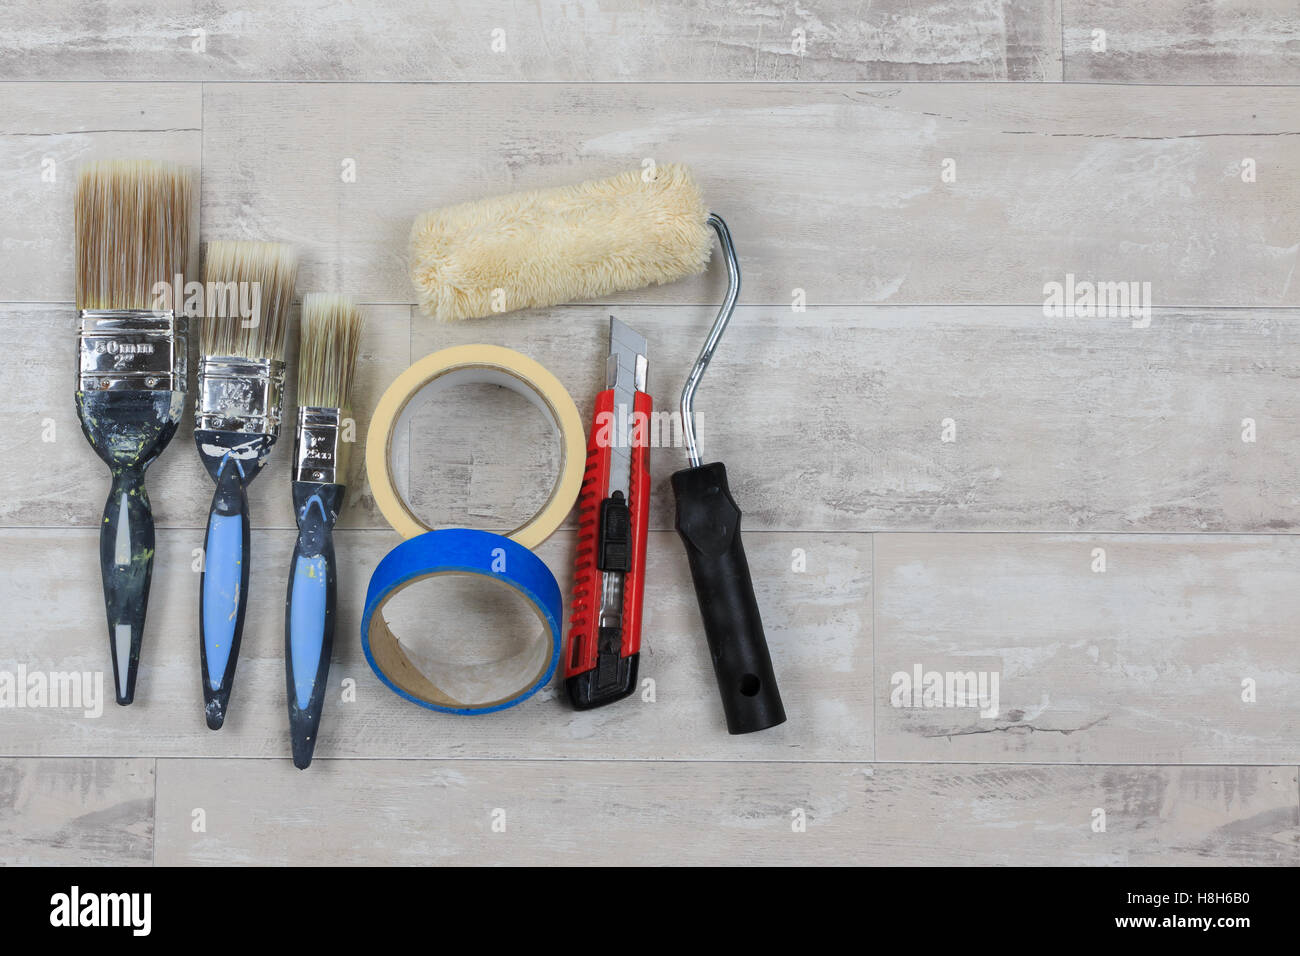 Malen Sie, Pinsel, Farbroller, Messer und Klebeband auf eine shabby Stil Holz Boden Stockfoto